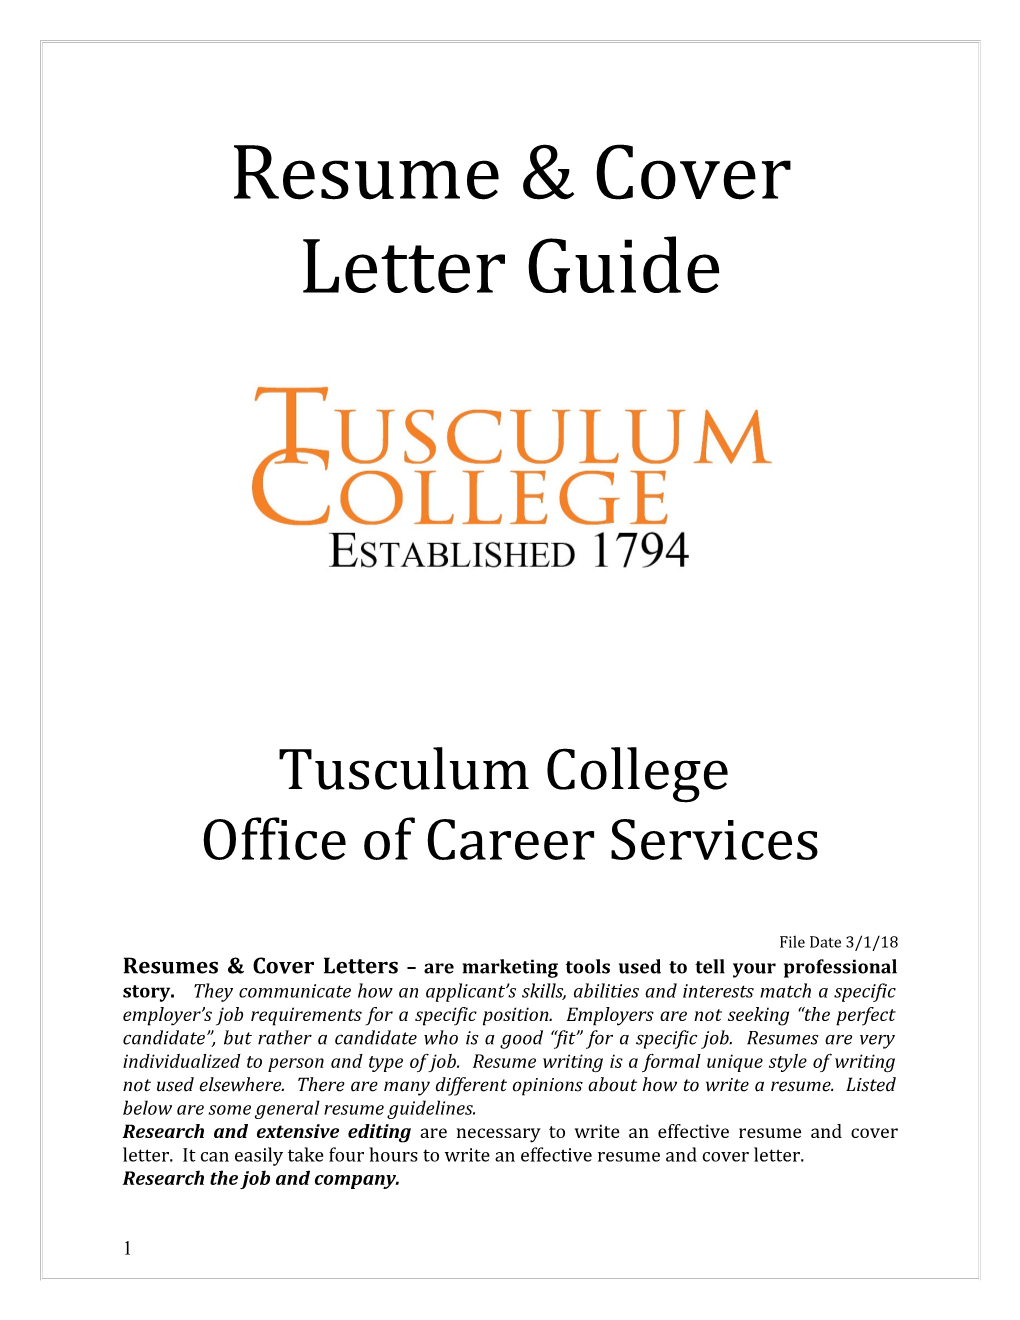 Resume & Cover Letter Guide